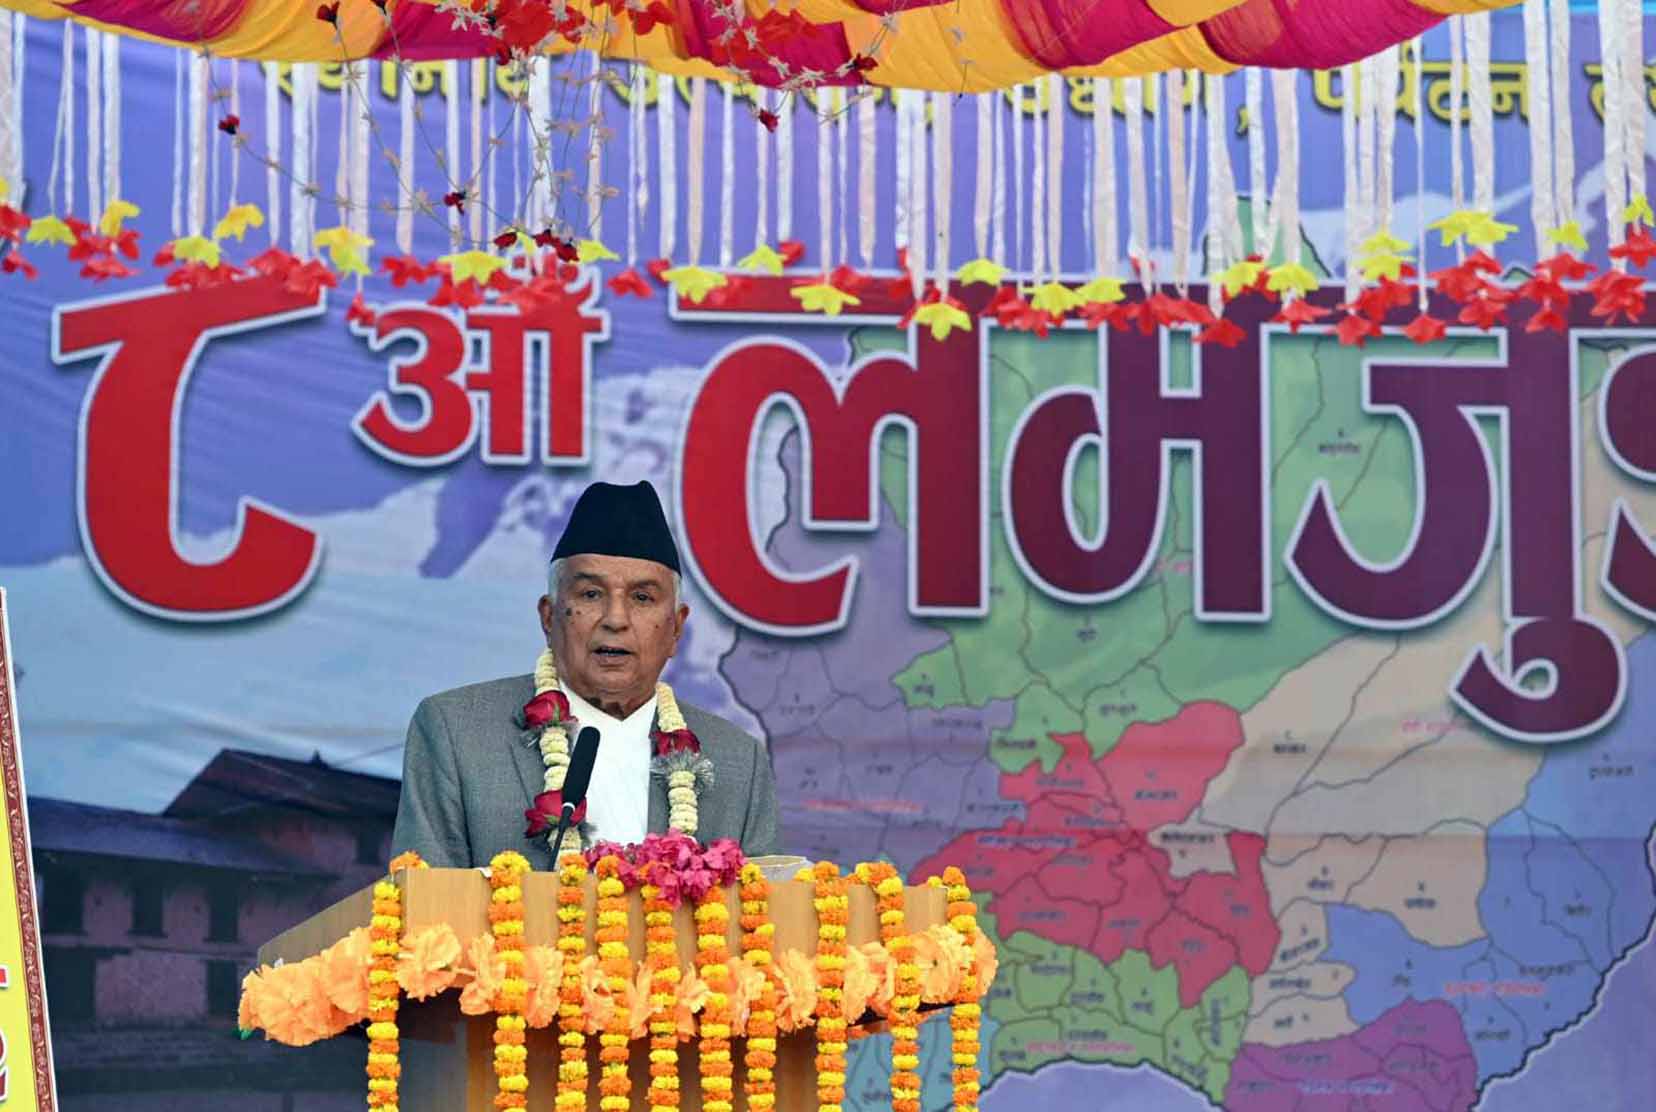 समुन्नत र समृद्ध नेपाल नै नेपालीको चाहना: राष्ट्रपति